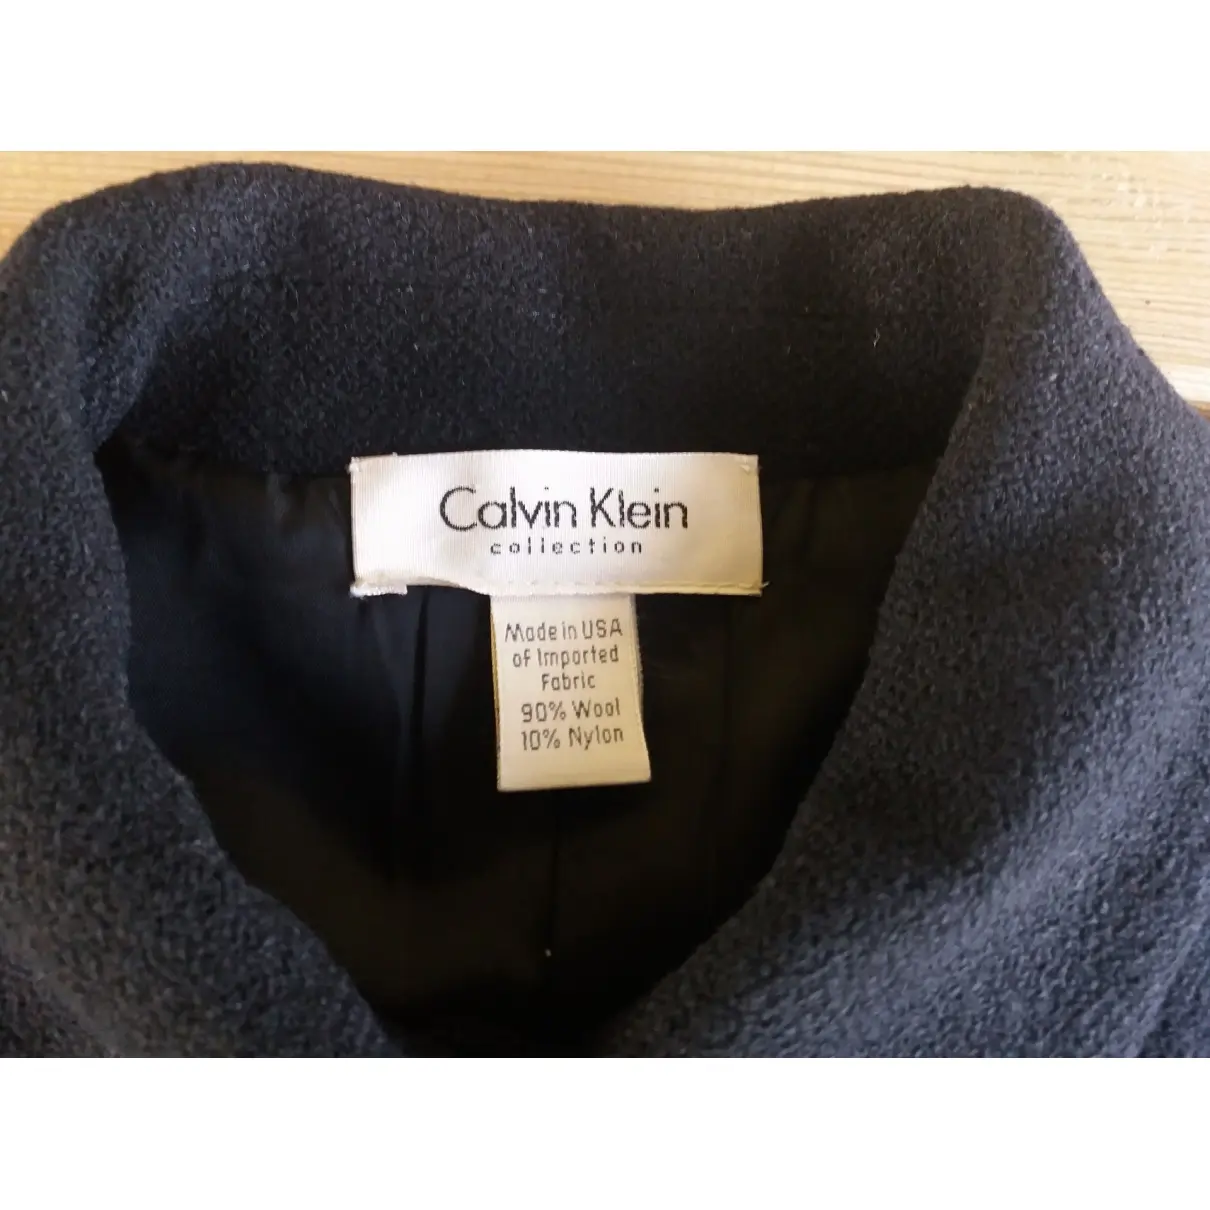 Buy Calvin Klein Collection Wool blazer online - Vintage